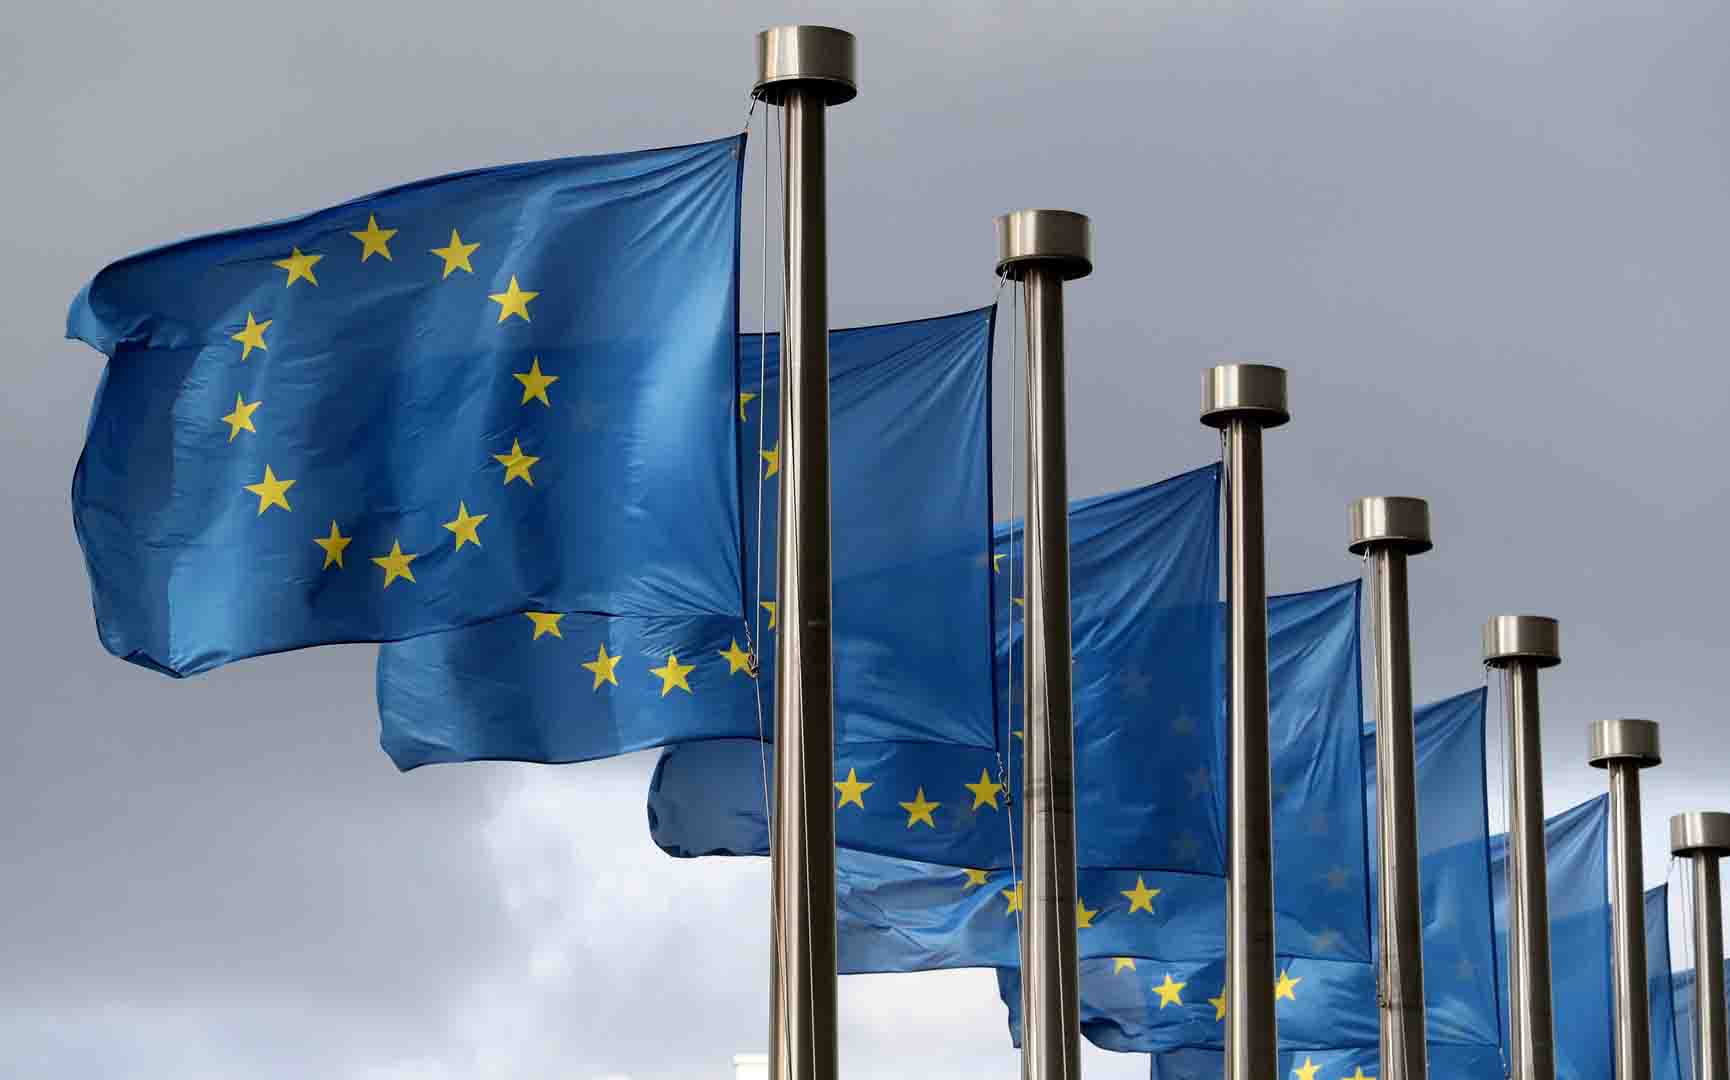 المفوضية الأوروبية ترحب باتفاق سياسي بشأن تسهيل إدارة الحدود وتعزيز الأمن بين الدول الأعضاء‎